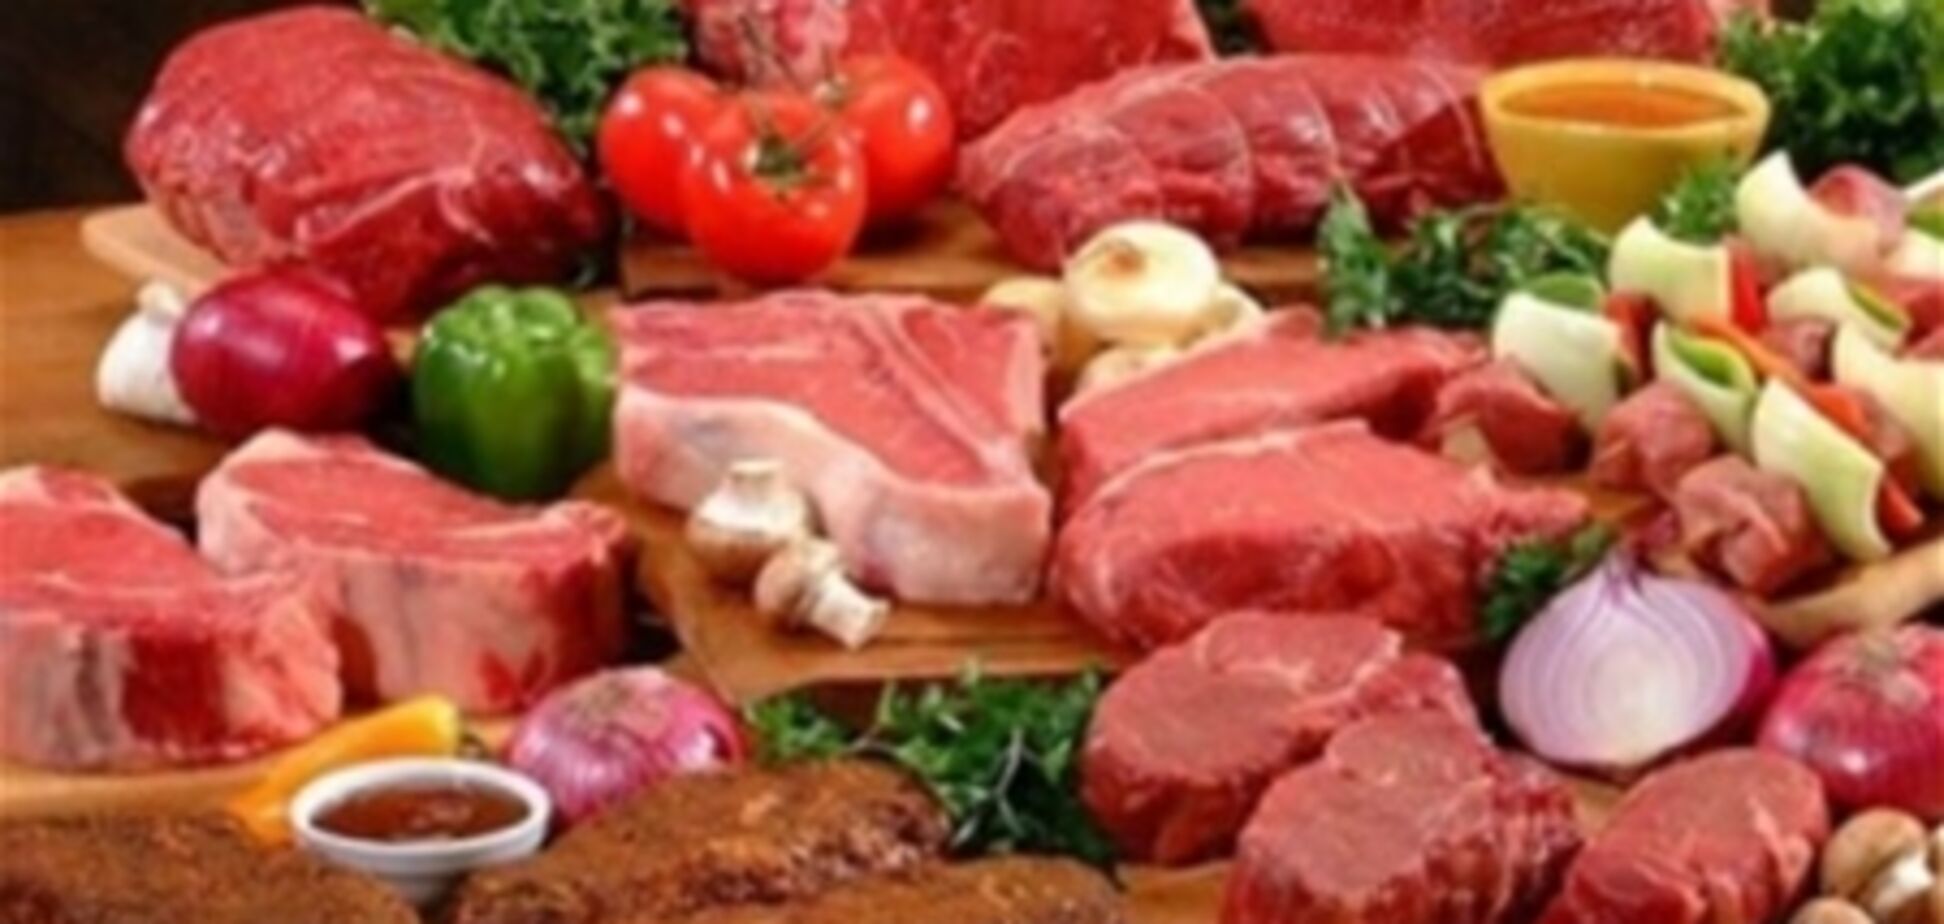 ЕС проведет масштабные проверки мясных продуктов